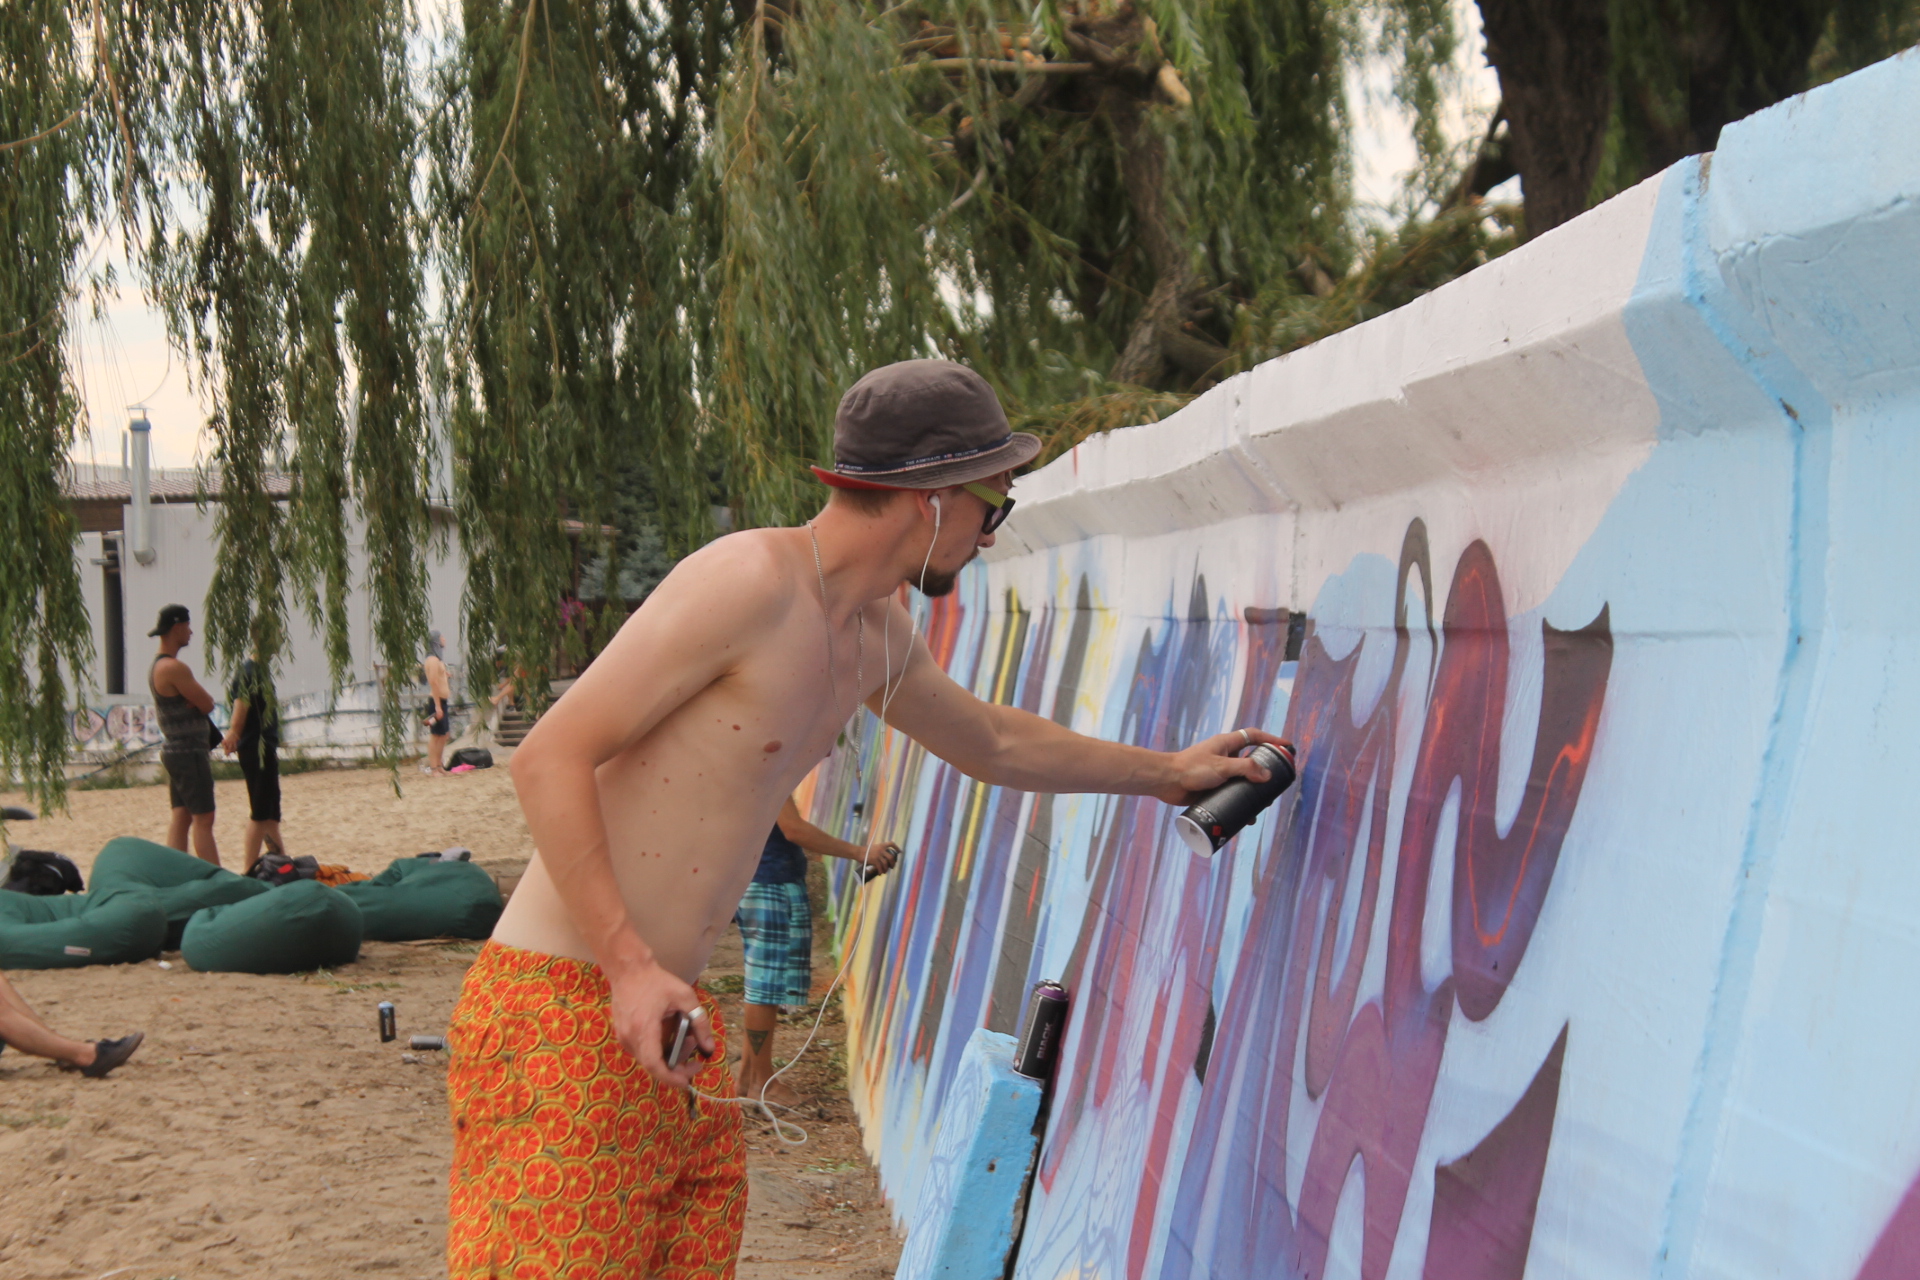 “Цветной город”: в Запорожье художники разрисовали граффити стену центрального пляжа, – ФОТОРЕПОРТАЖ